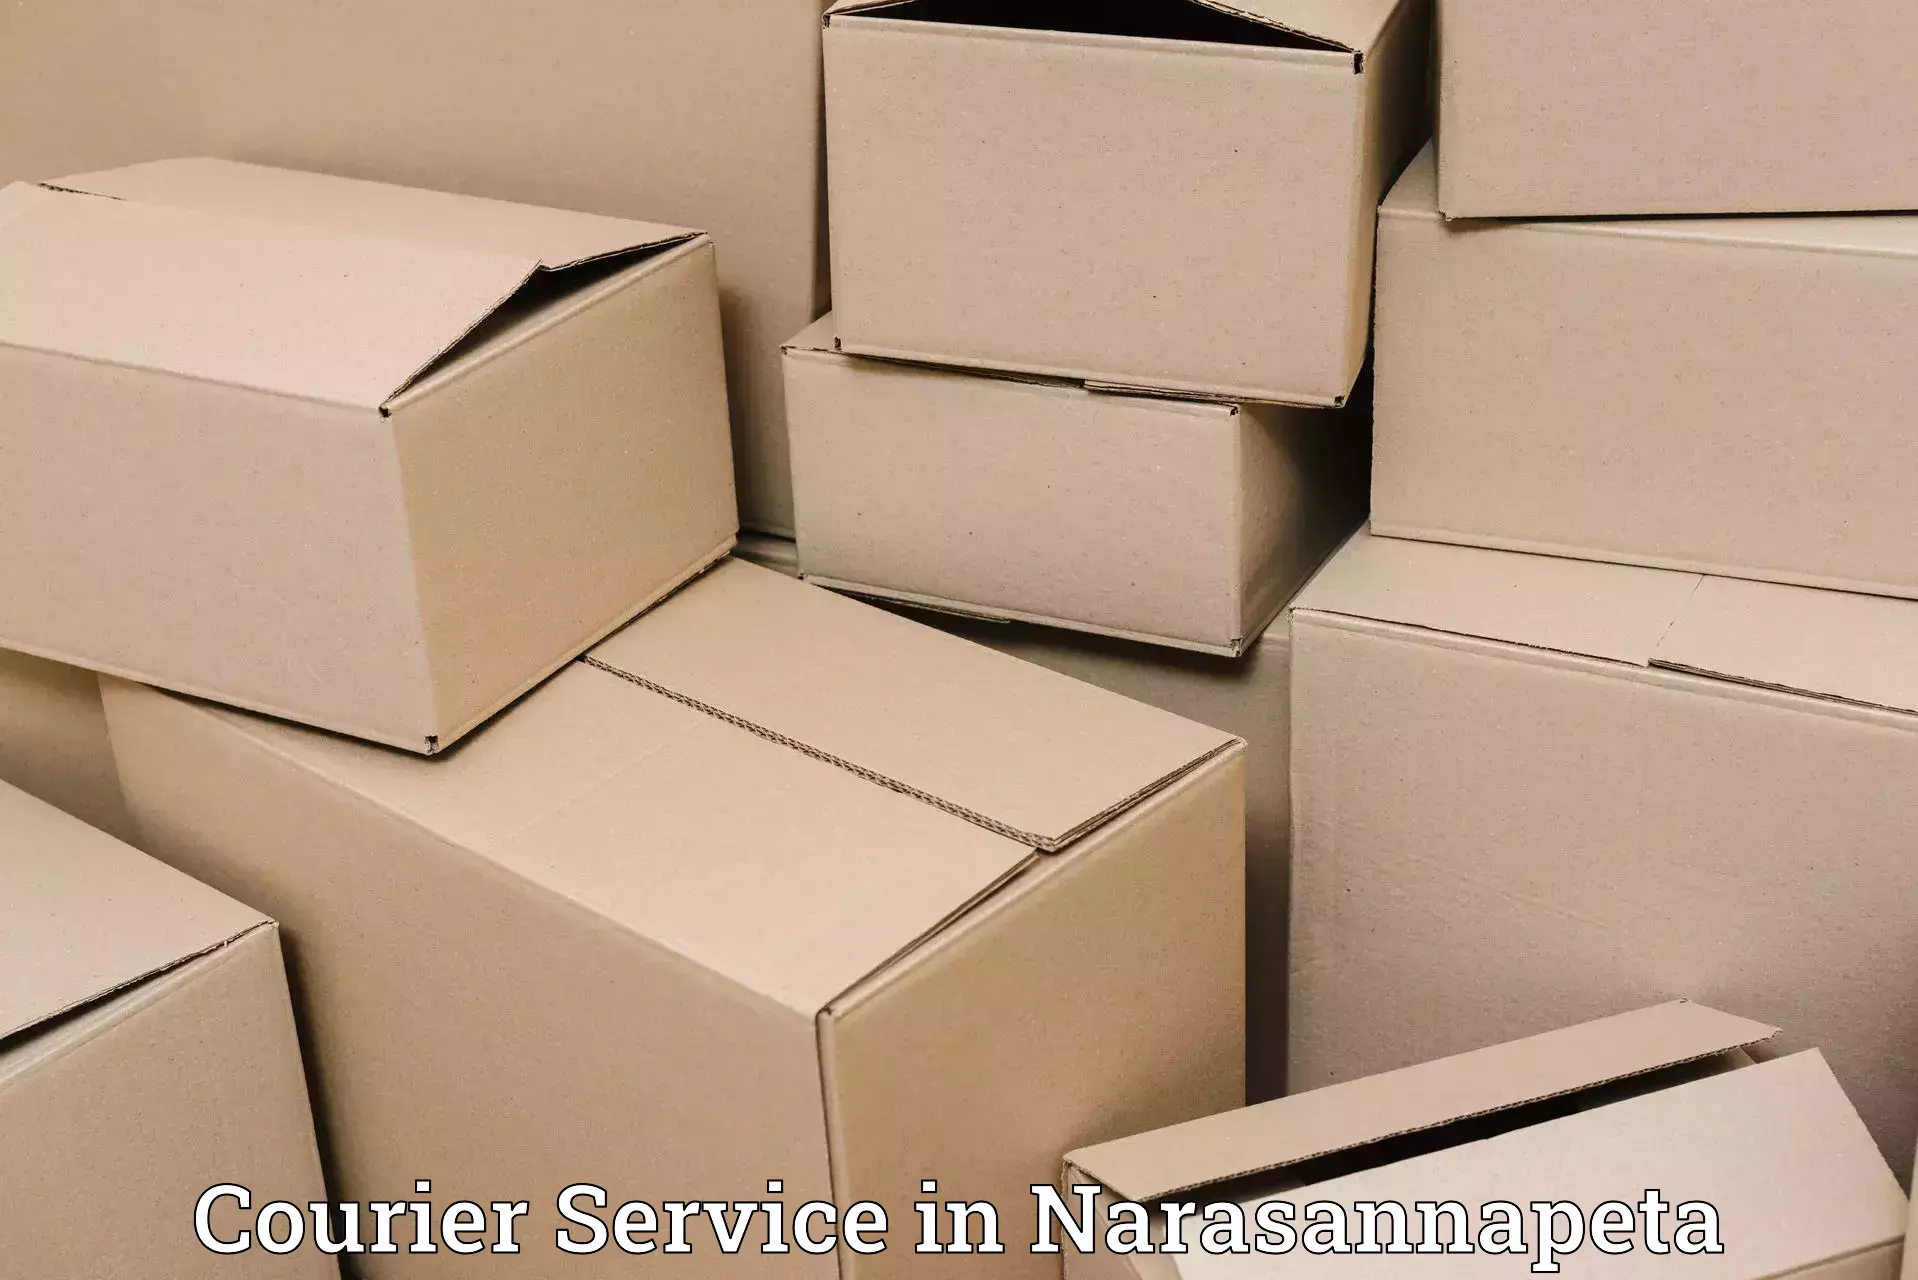 Premium courier services in Narasannapeta